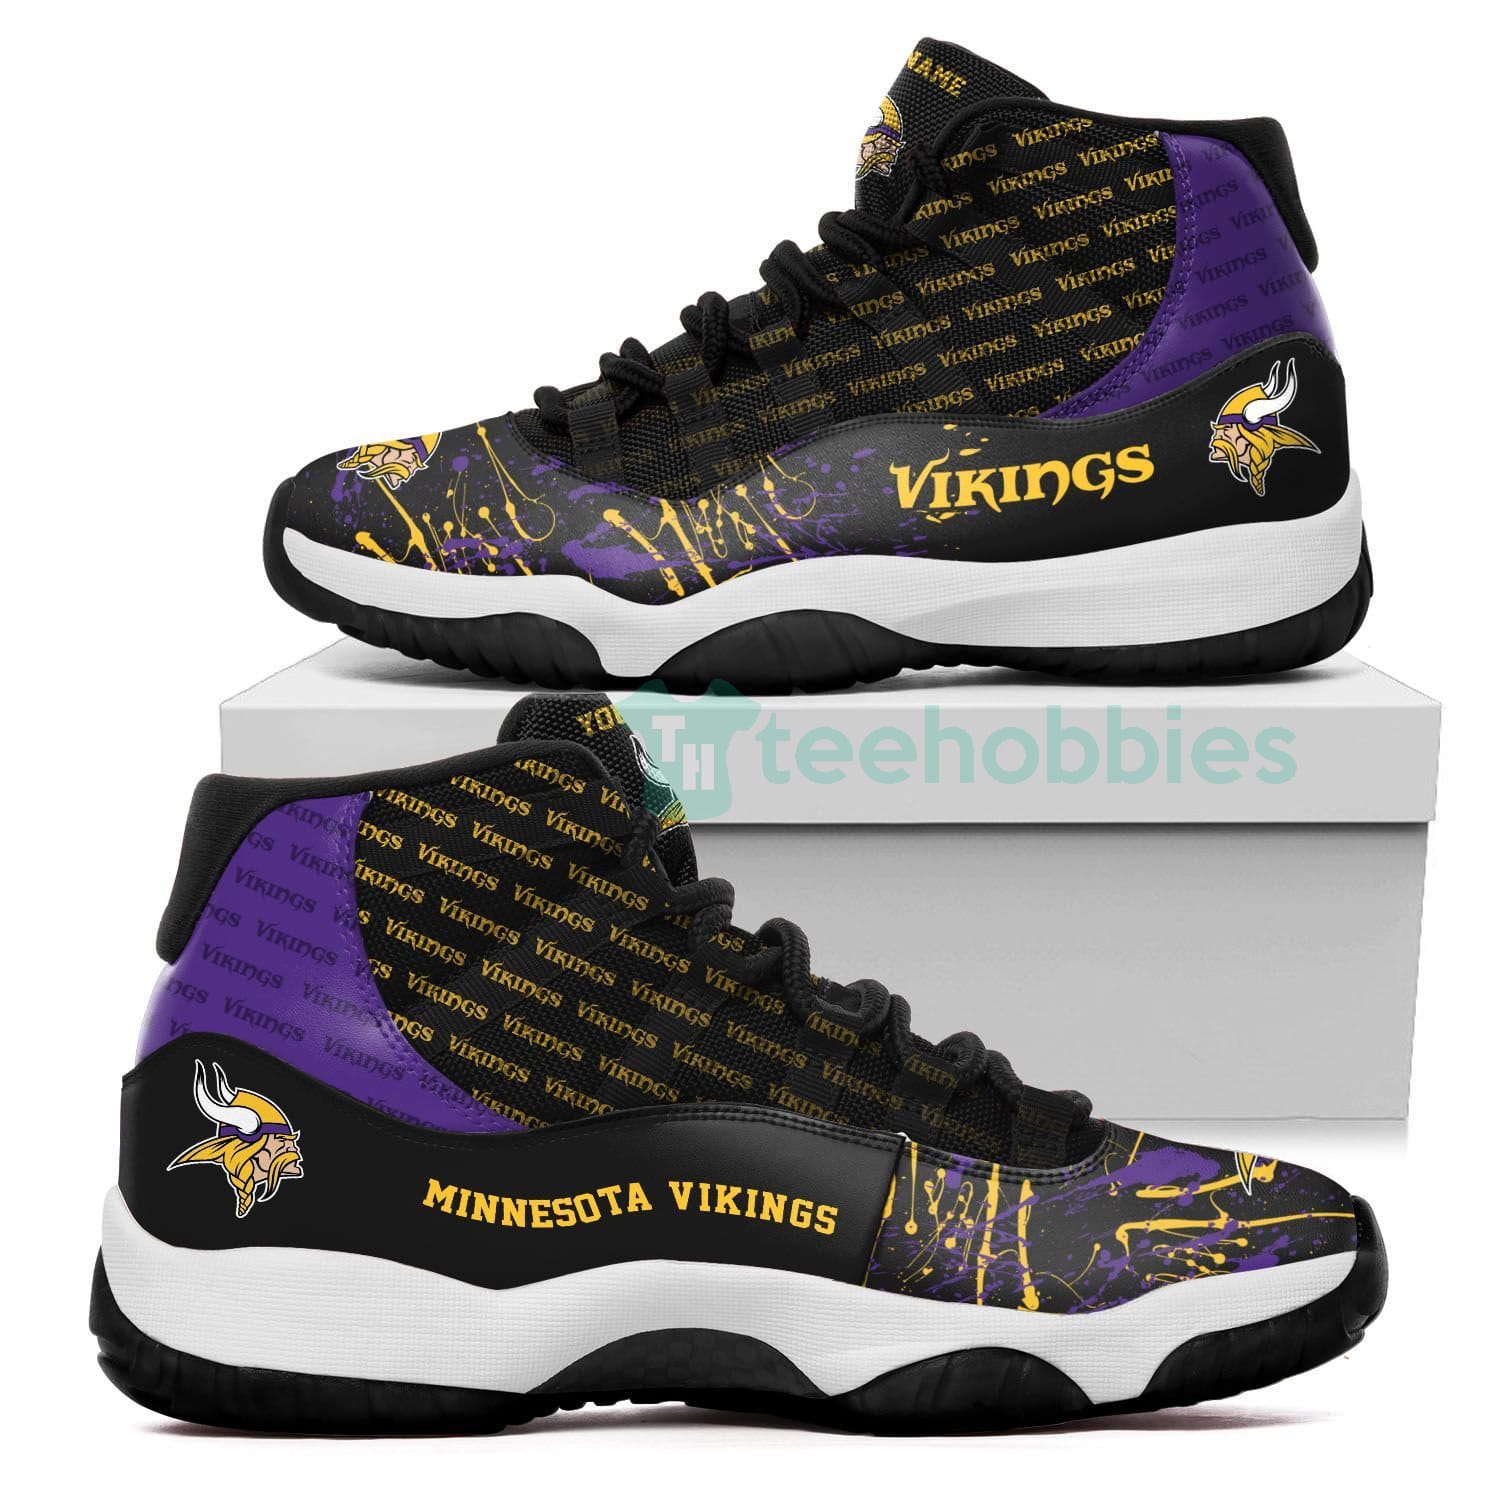 Minnesota Vikings Customized New Air Jordan 11 Shoes